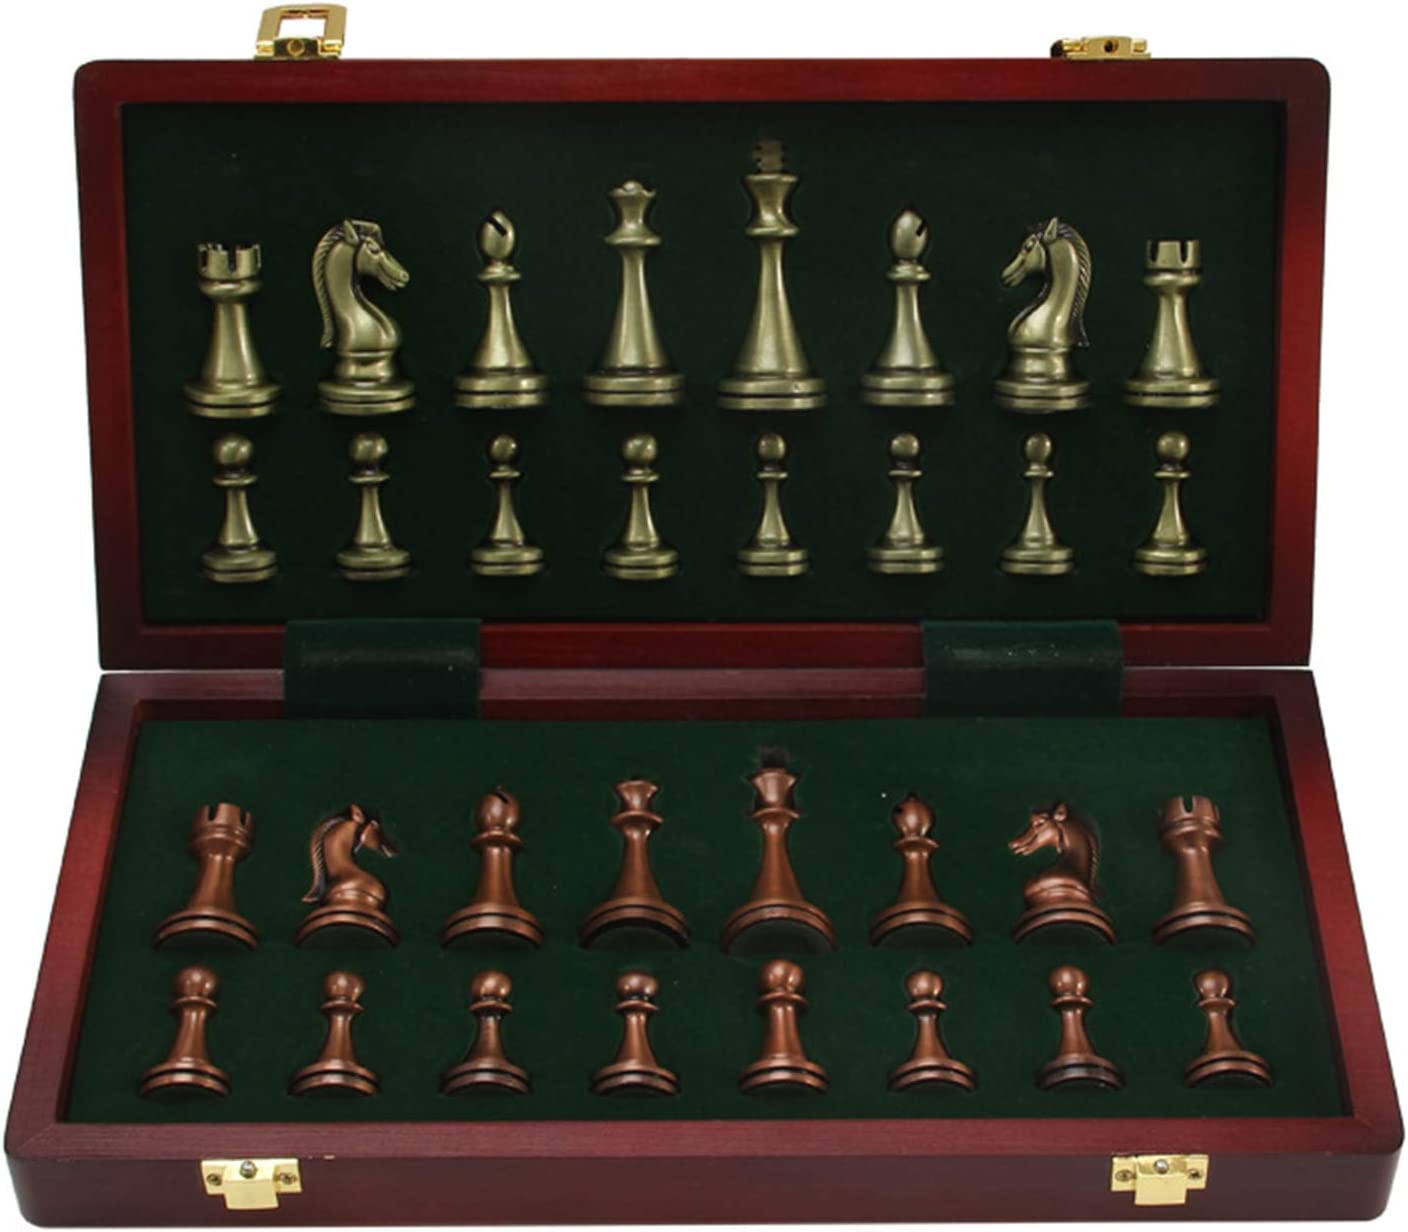 Ver categoría de ajedrez de metal plegable malsyee